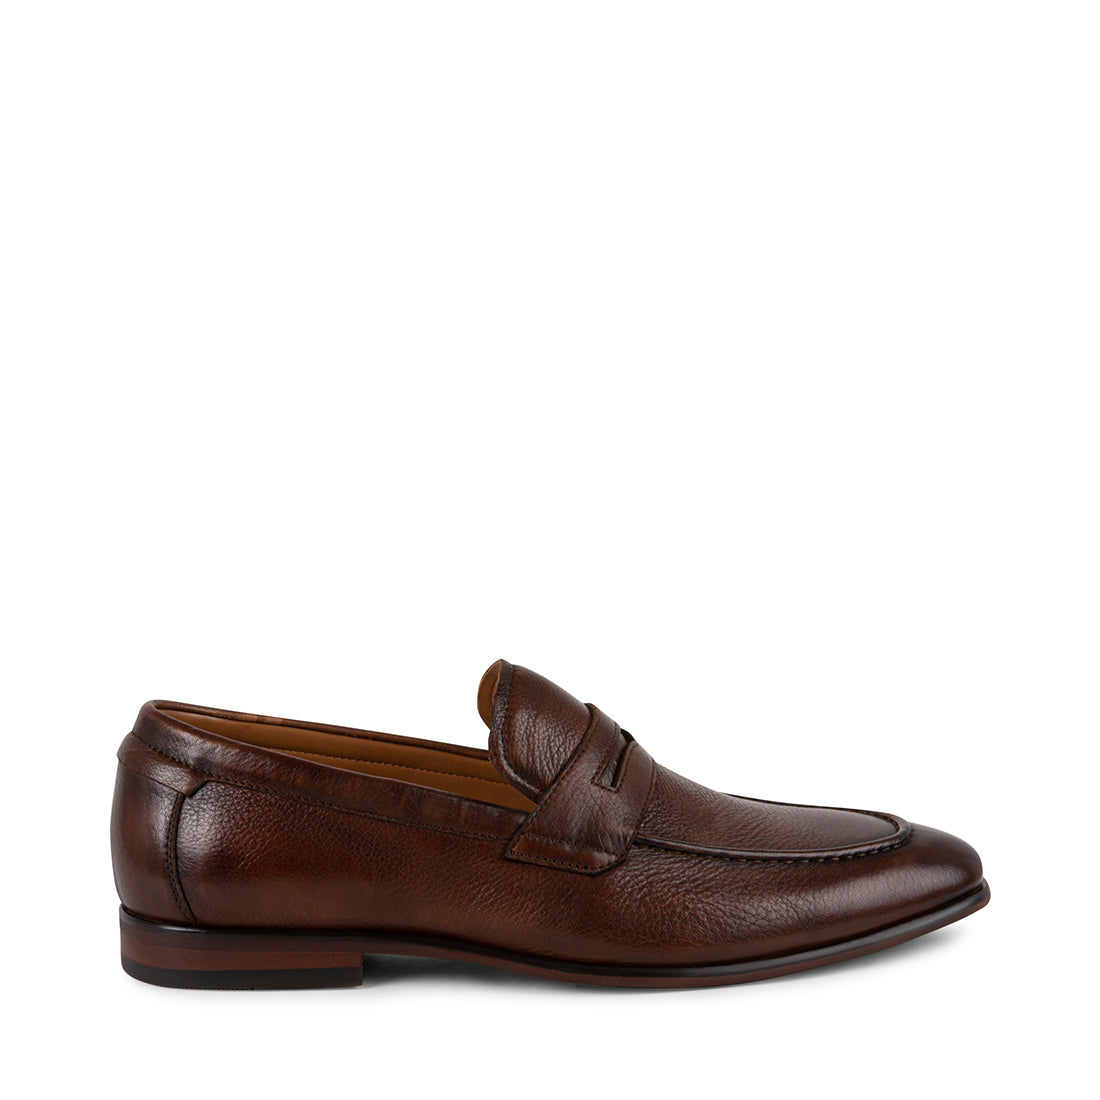 JAYMEZ Brown Leather Slip On Loafers | Men's Designer Dress Shoes ...